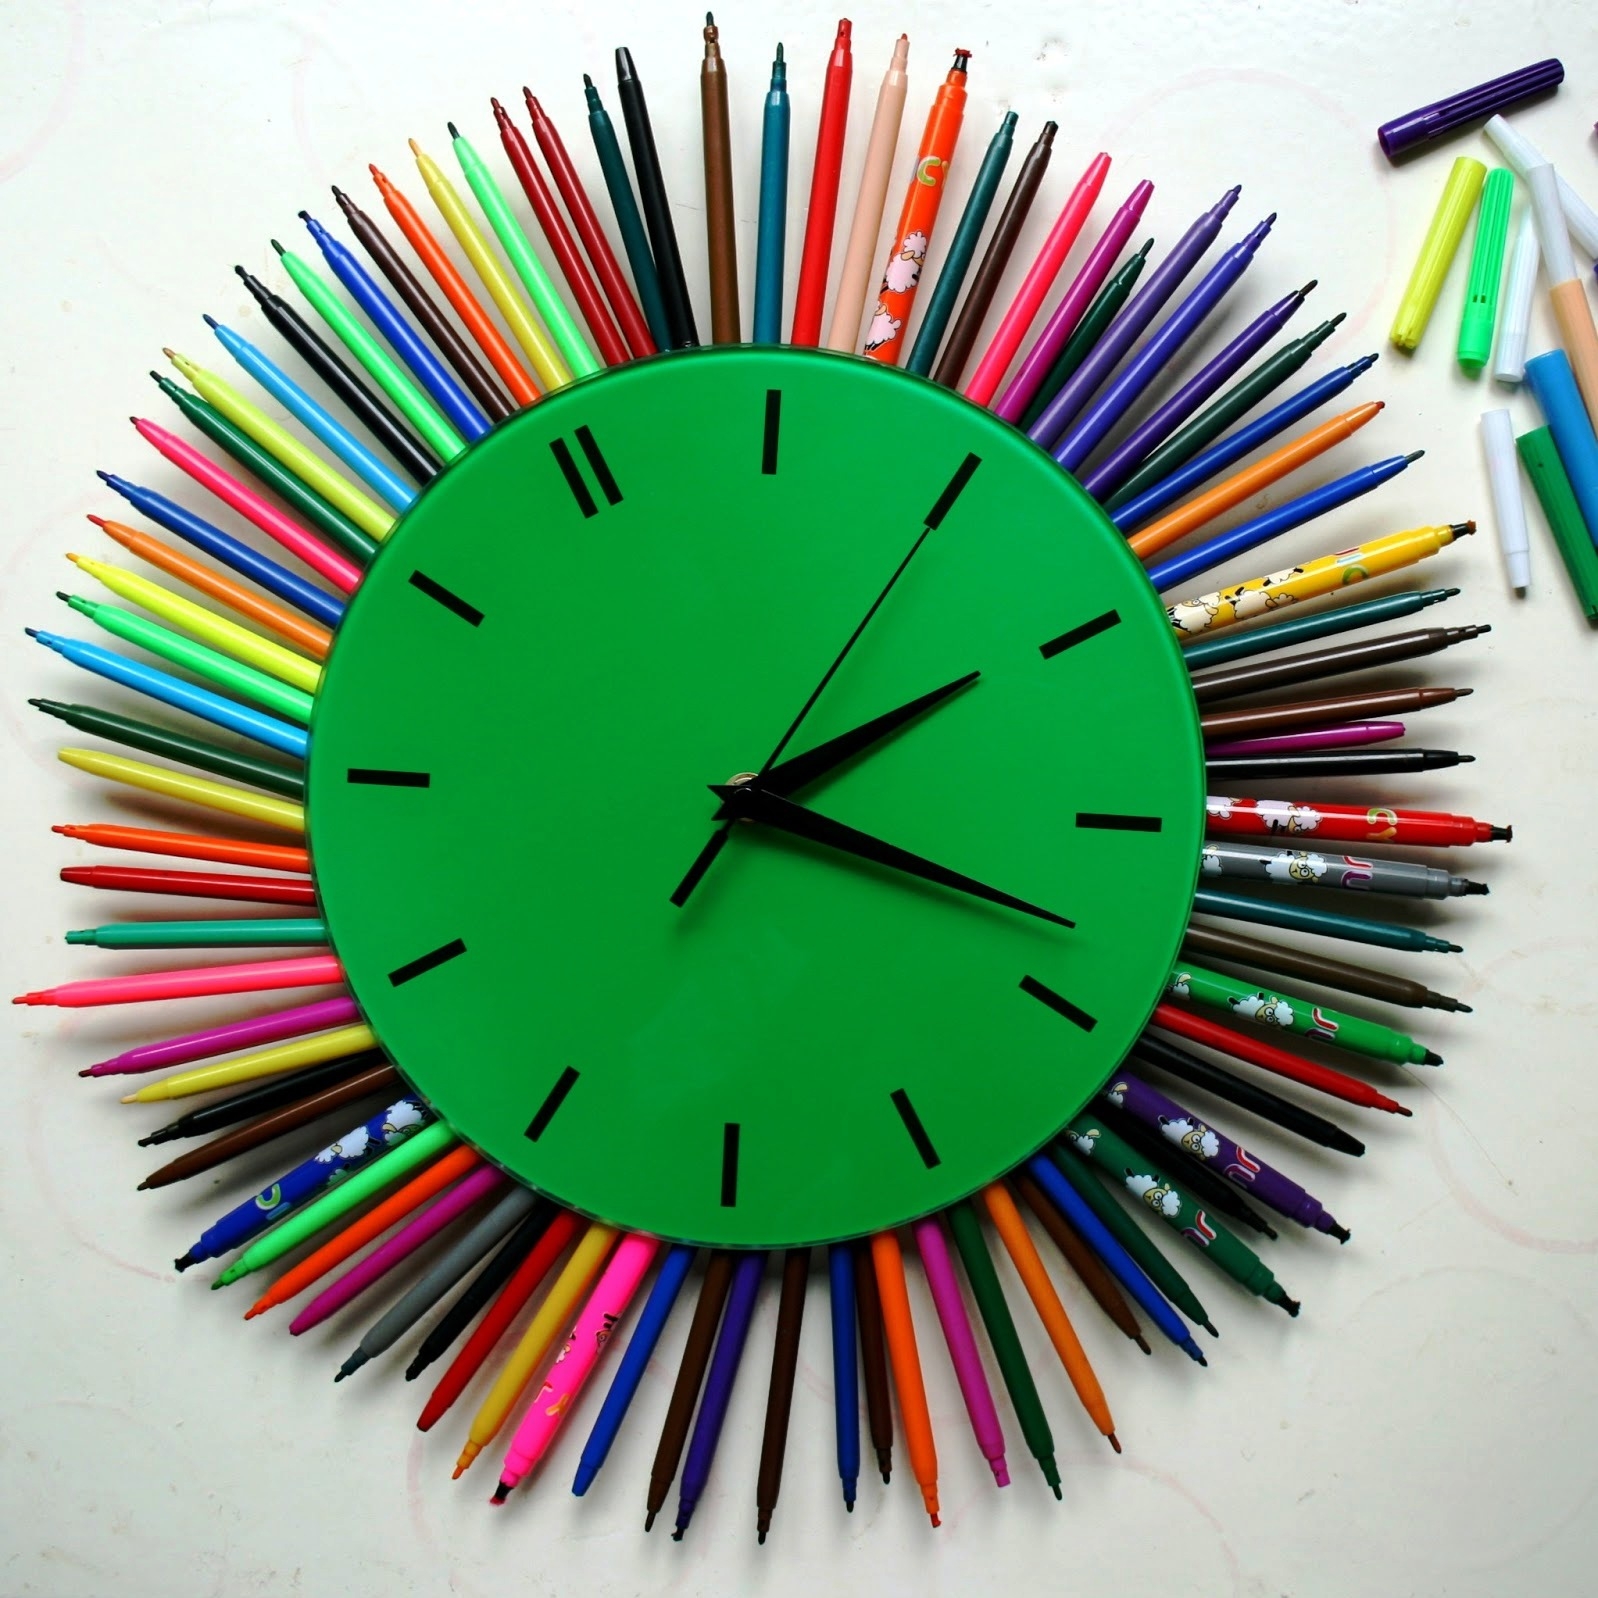 7 интересных идей, что полезного для дома можно сделать из остатков карандашей